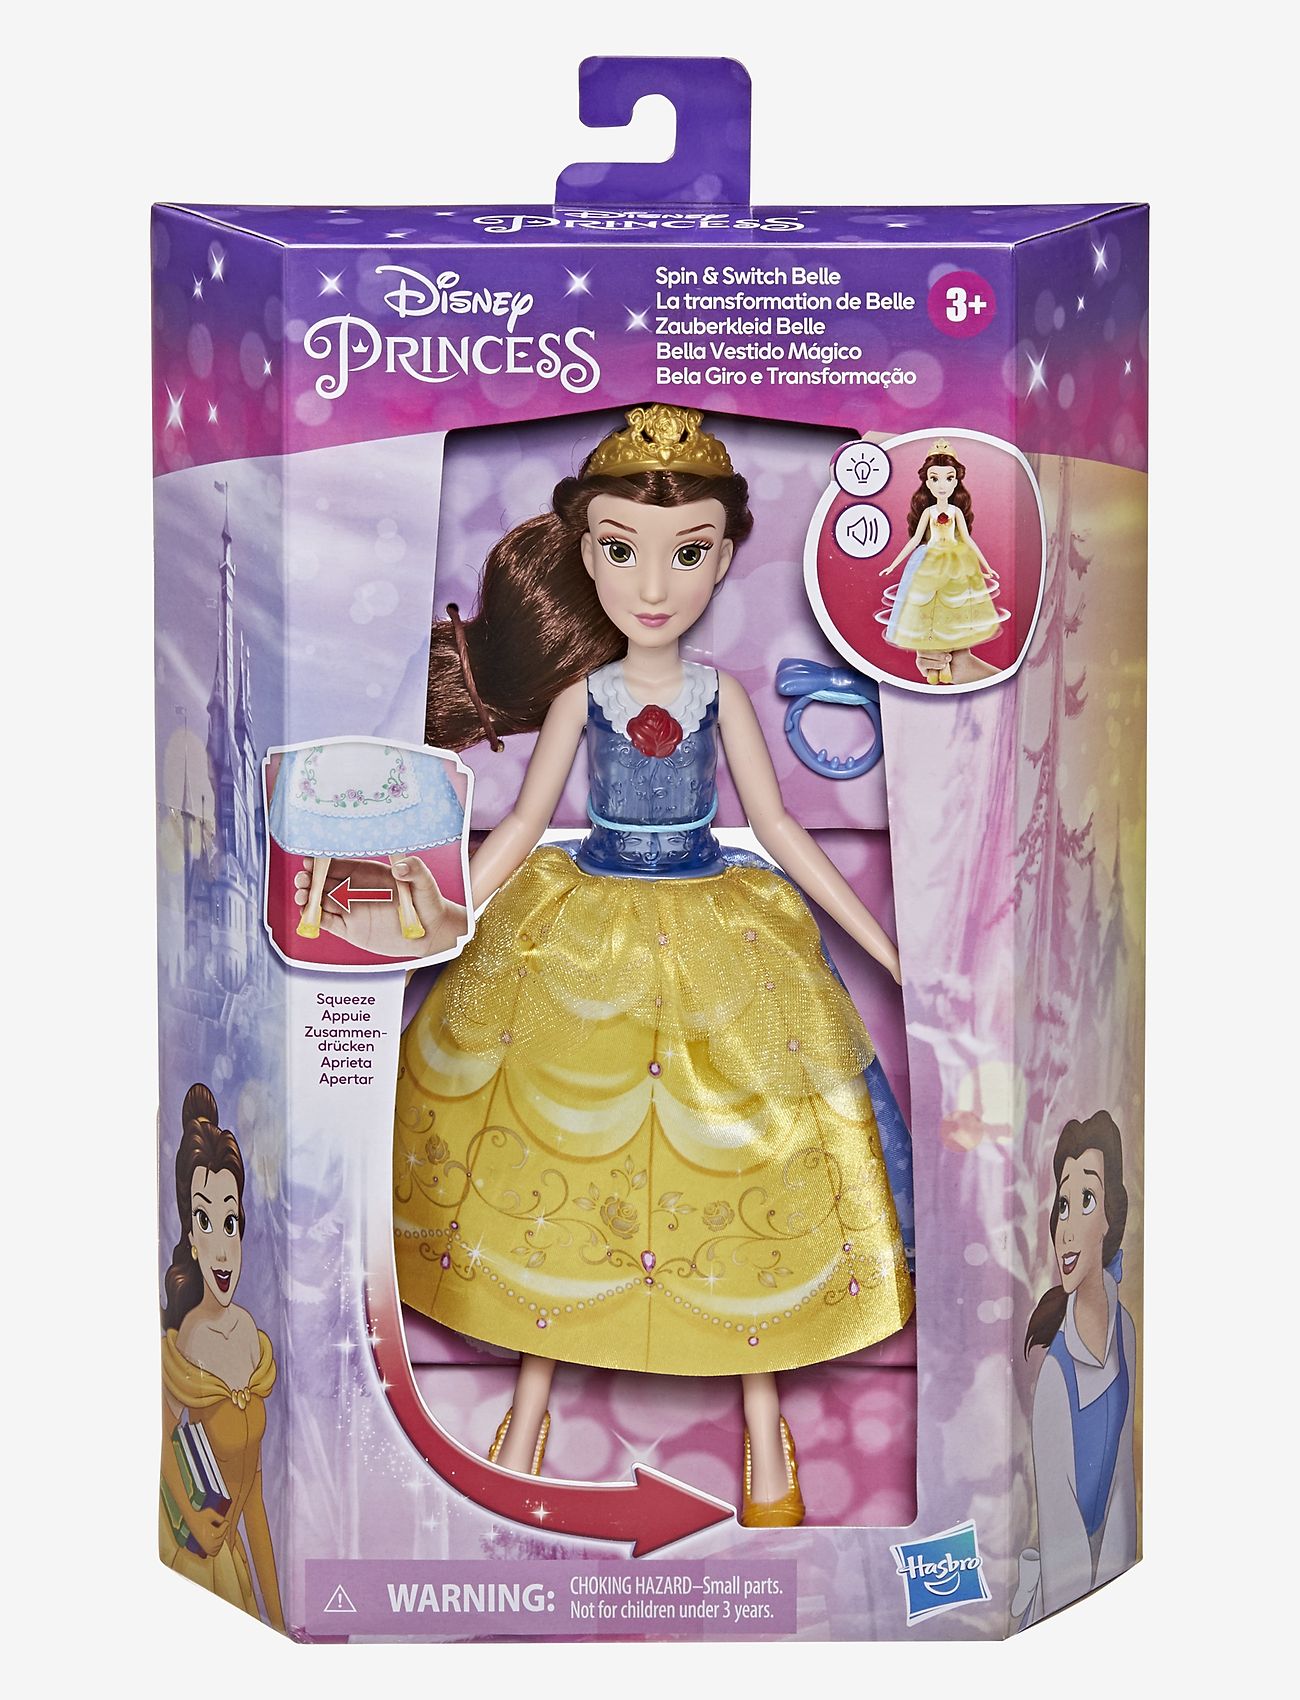 Disney Princess - Disney Princess Spin and Switch Belle - karakterer fra filmer og eventyr - multi-color - 1